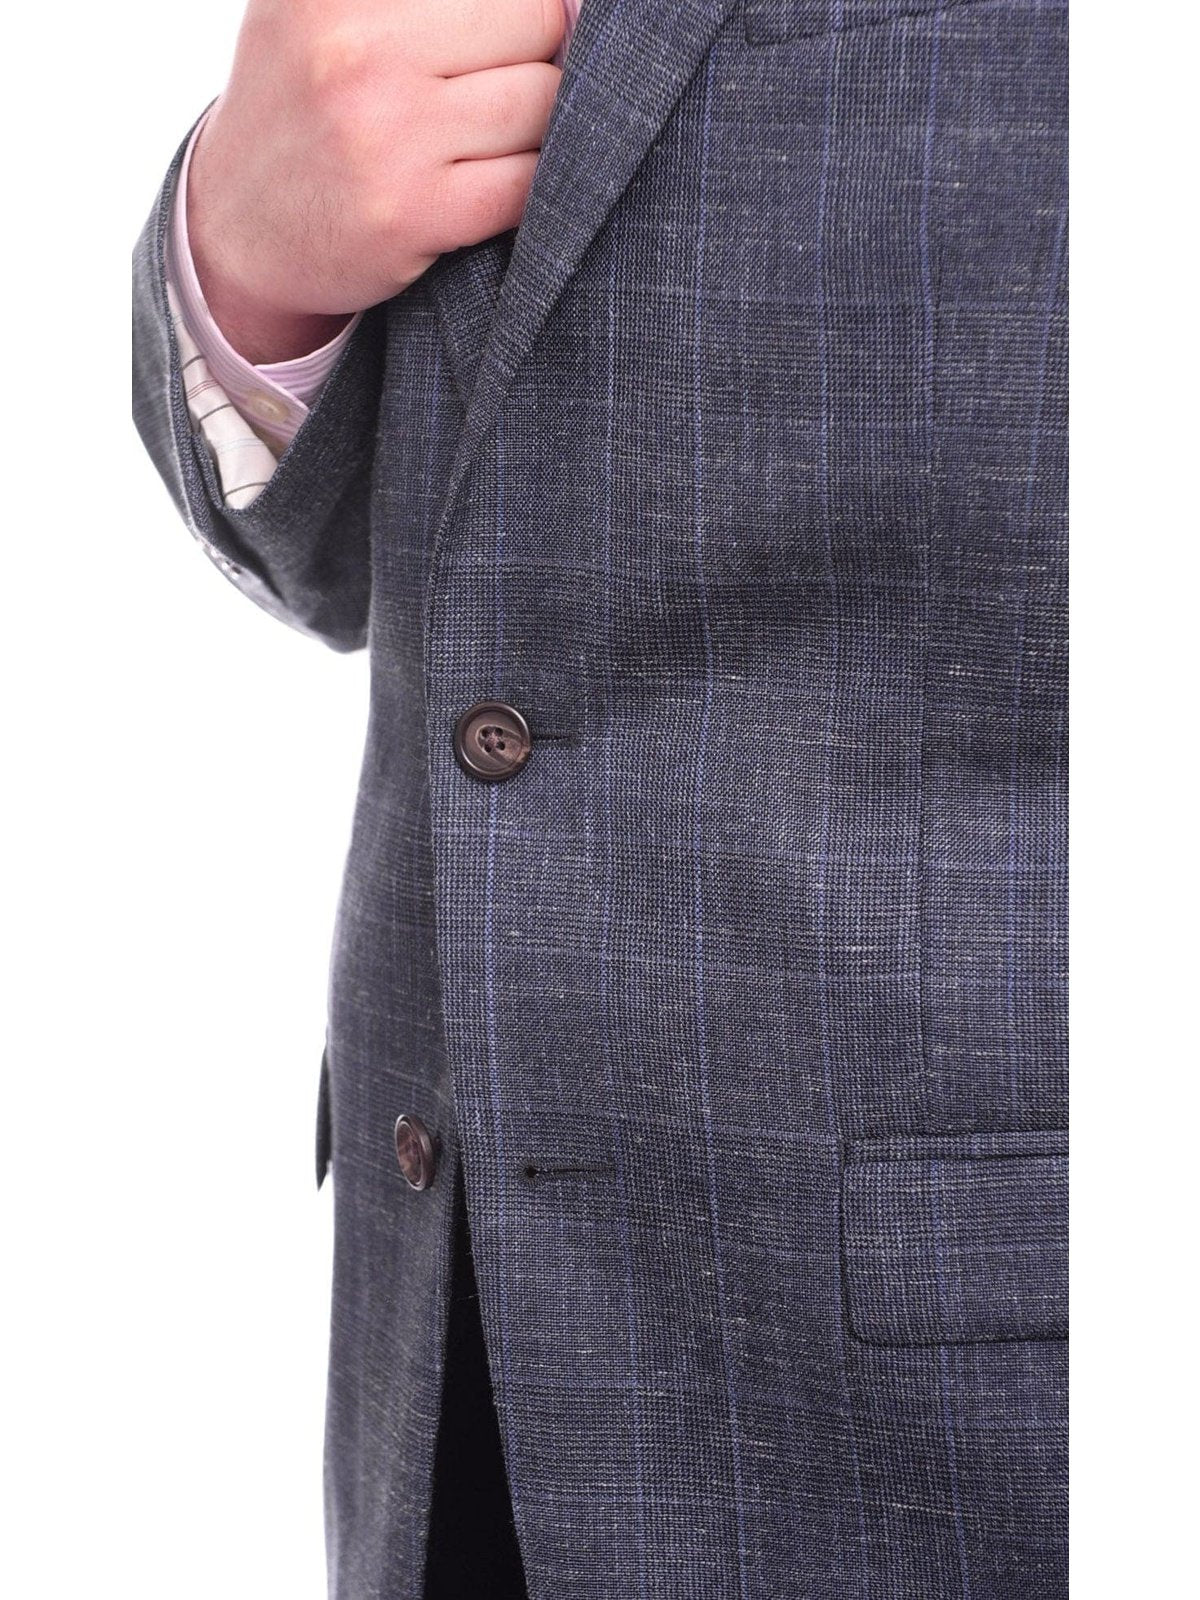 Ralph Lauren BLAZERS Ralph Lauren Classic Fit Blue Plaid Two Button Wool Silk Blend Blazer Sportcoat